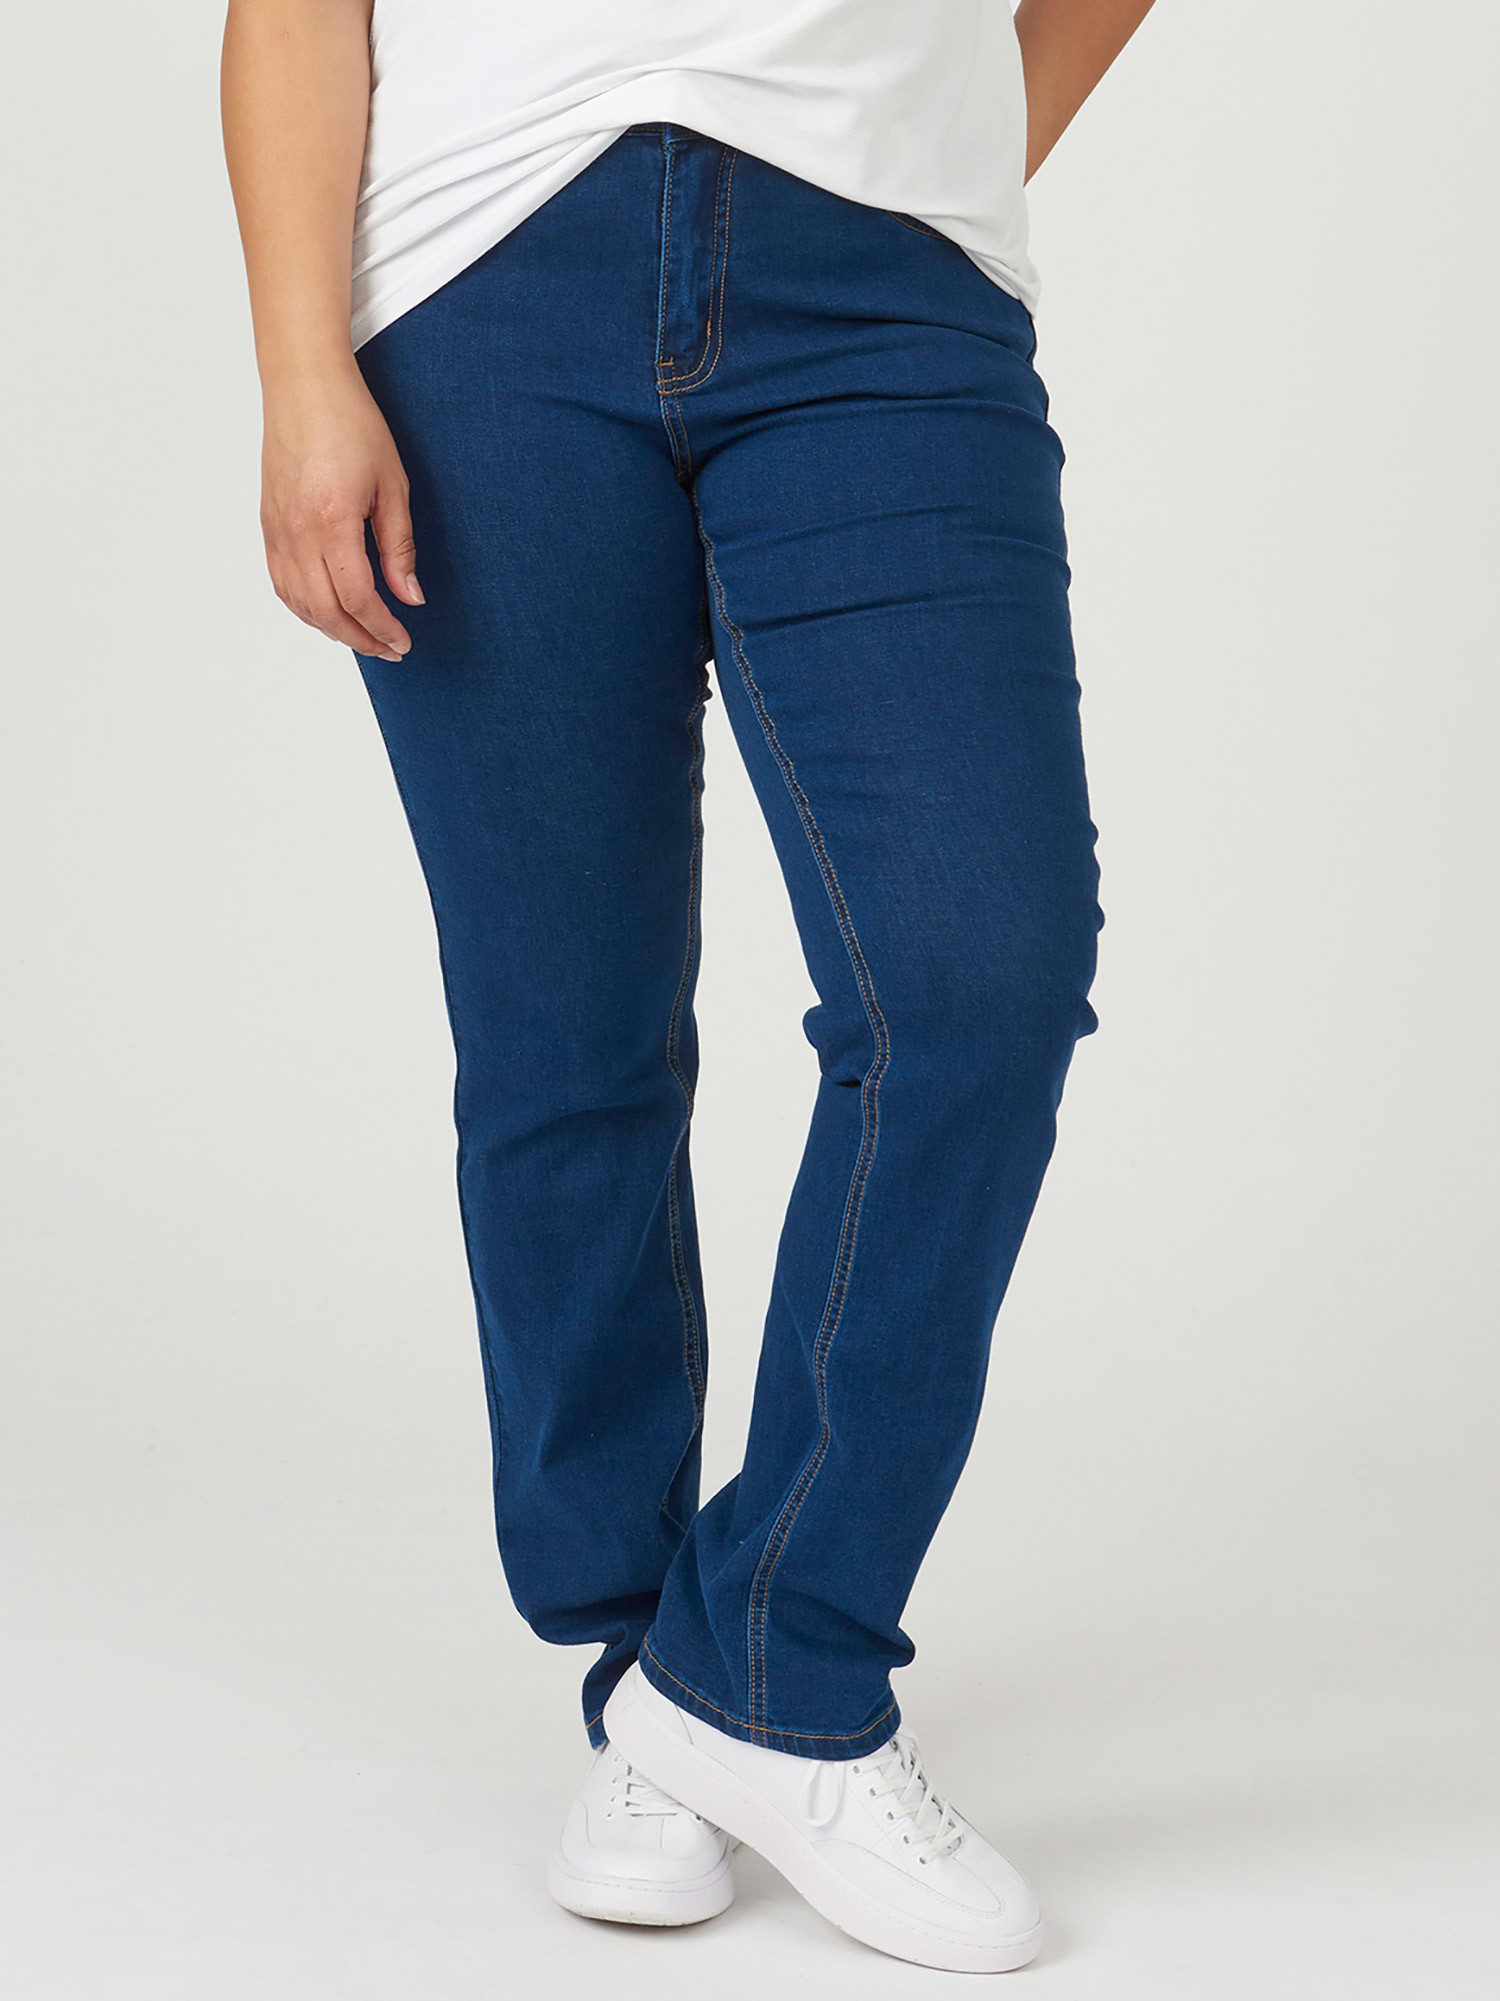 ROME - Blå jeans med bred linning